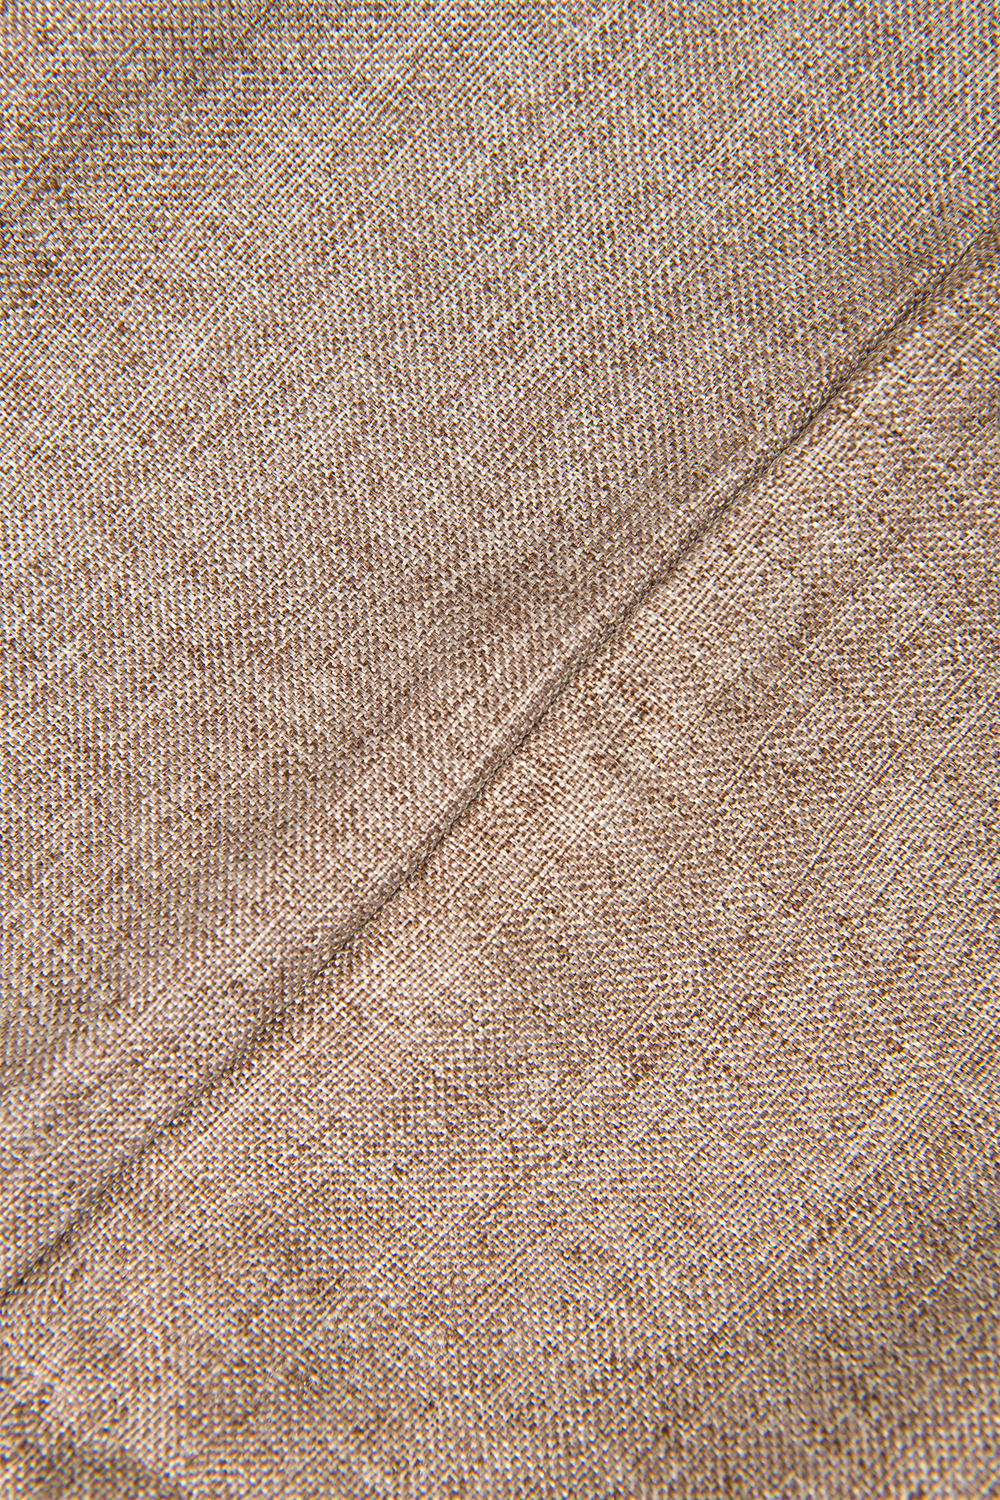 Мешочек XOXO, текстиль, коричневый, 24,5*14 см